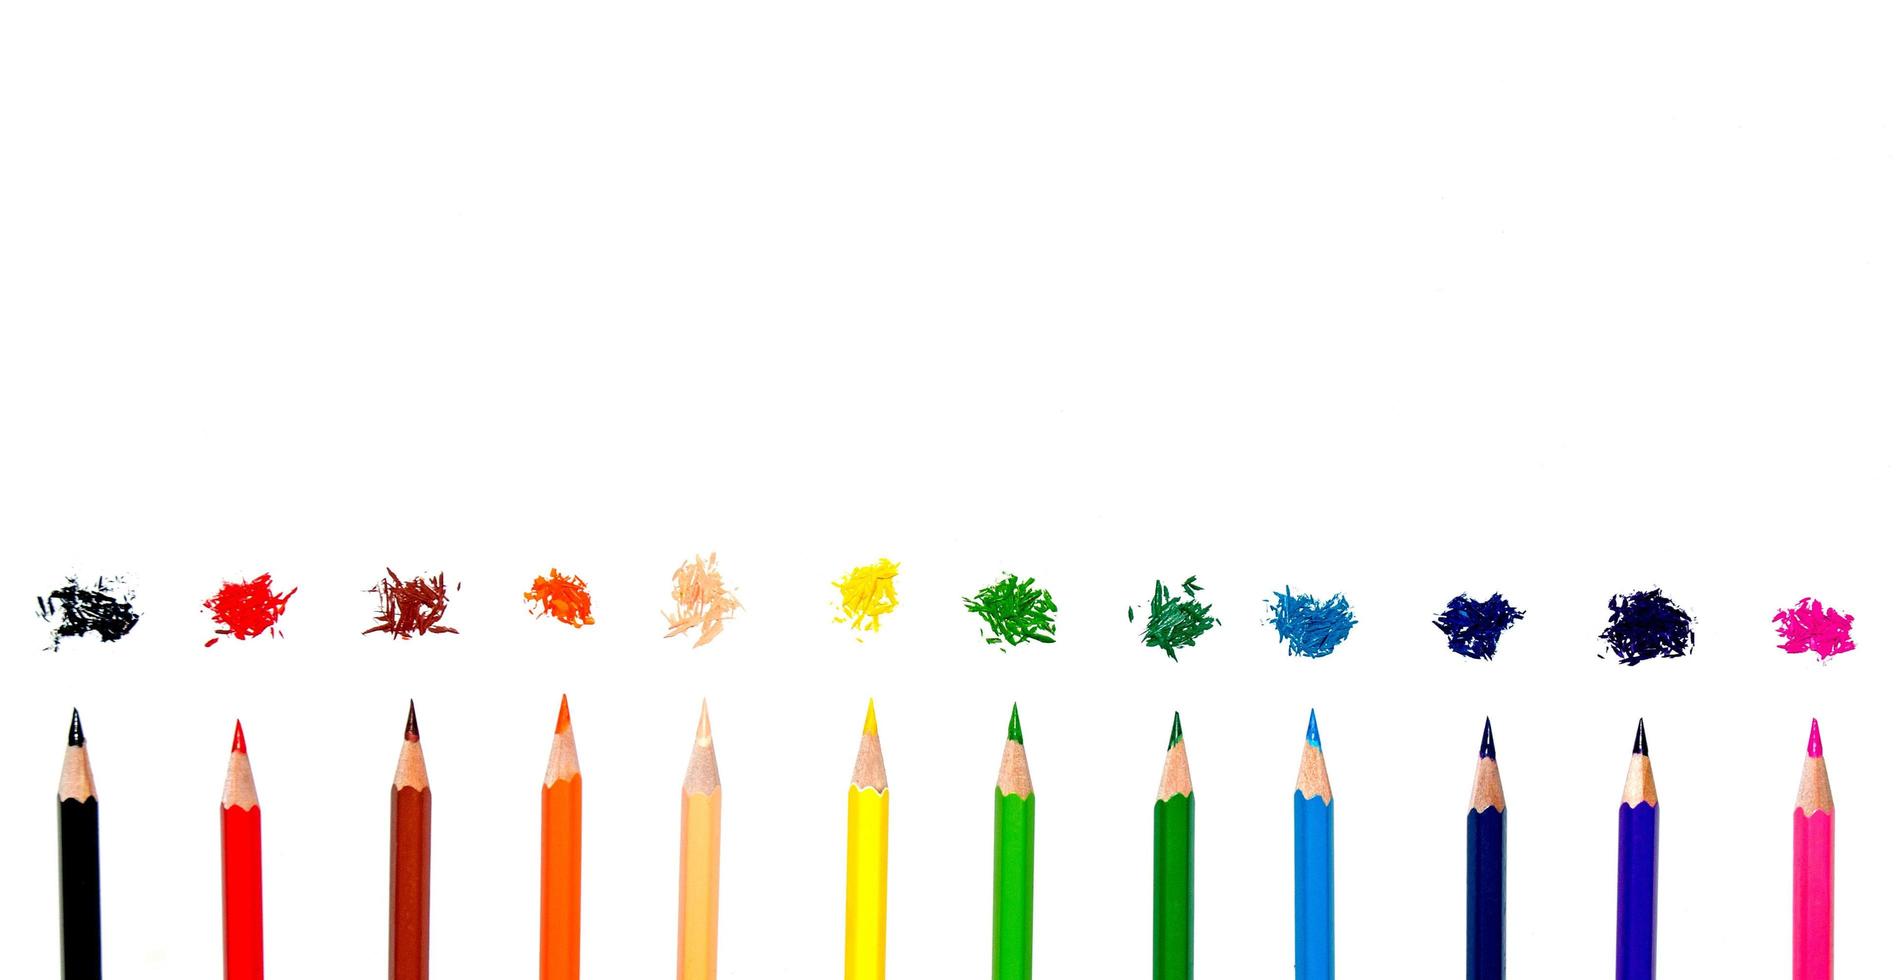 färgpenna och penna på vit bakgrund foto